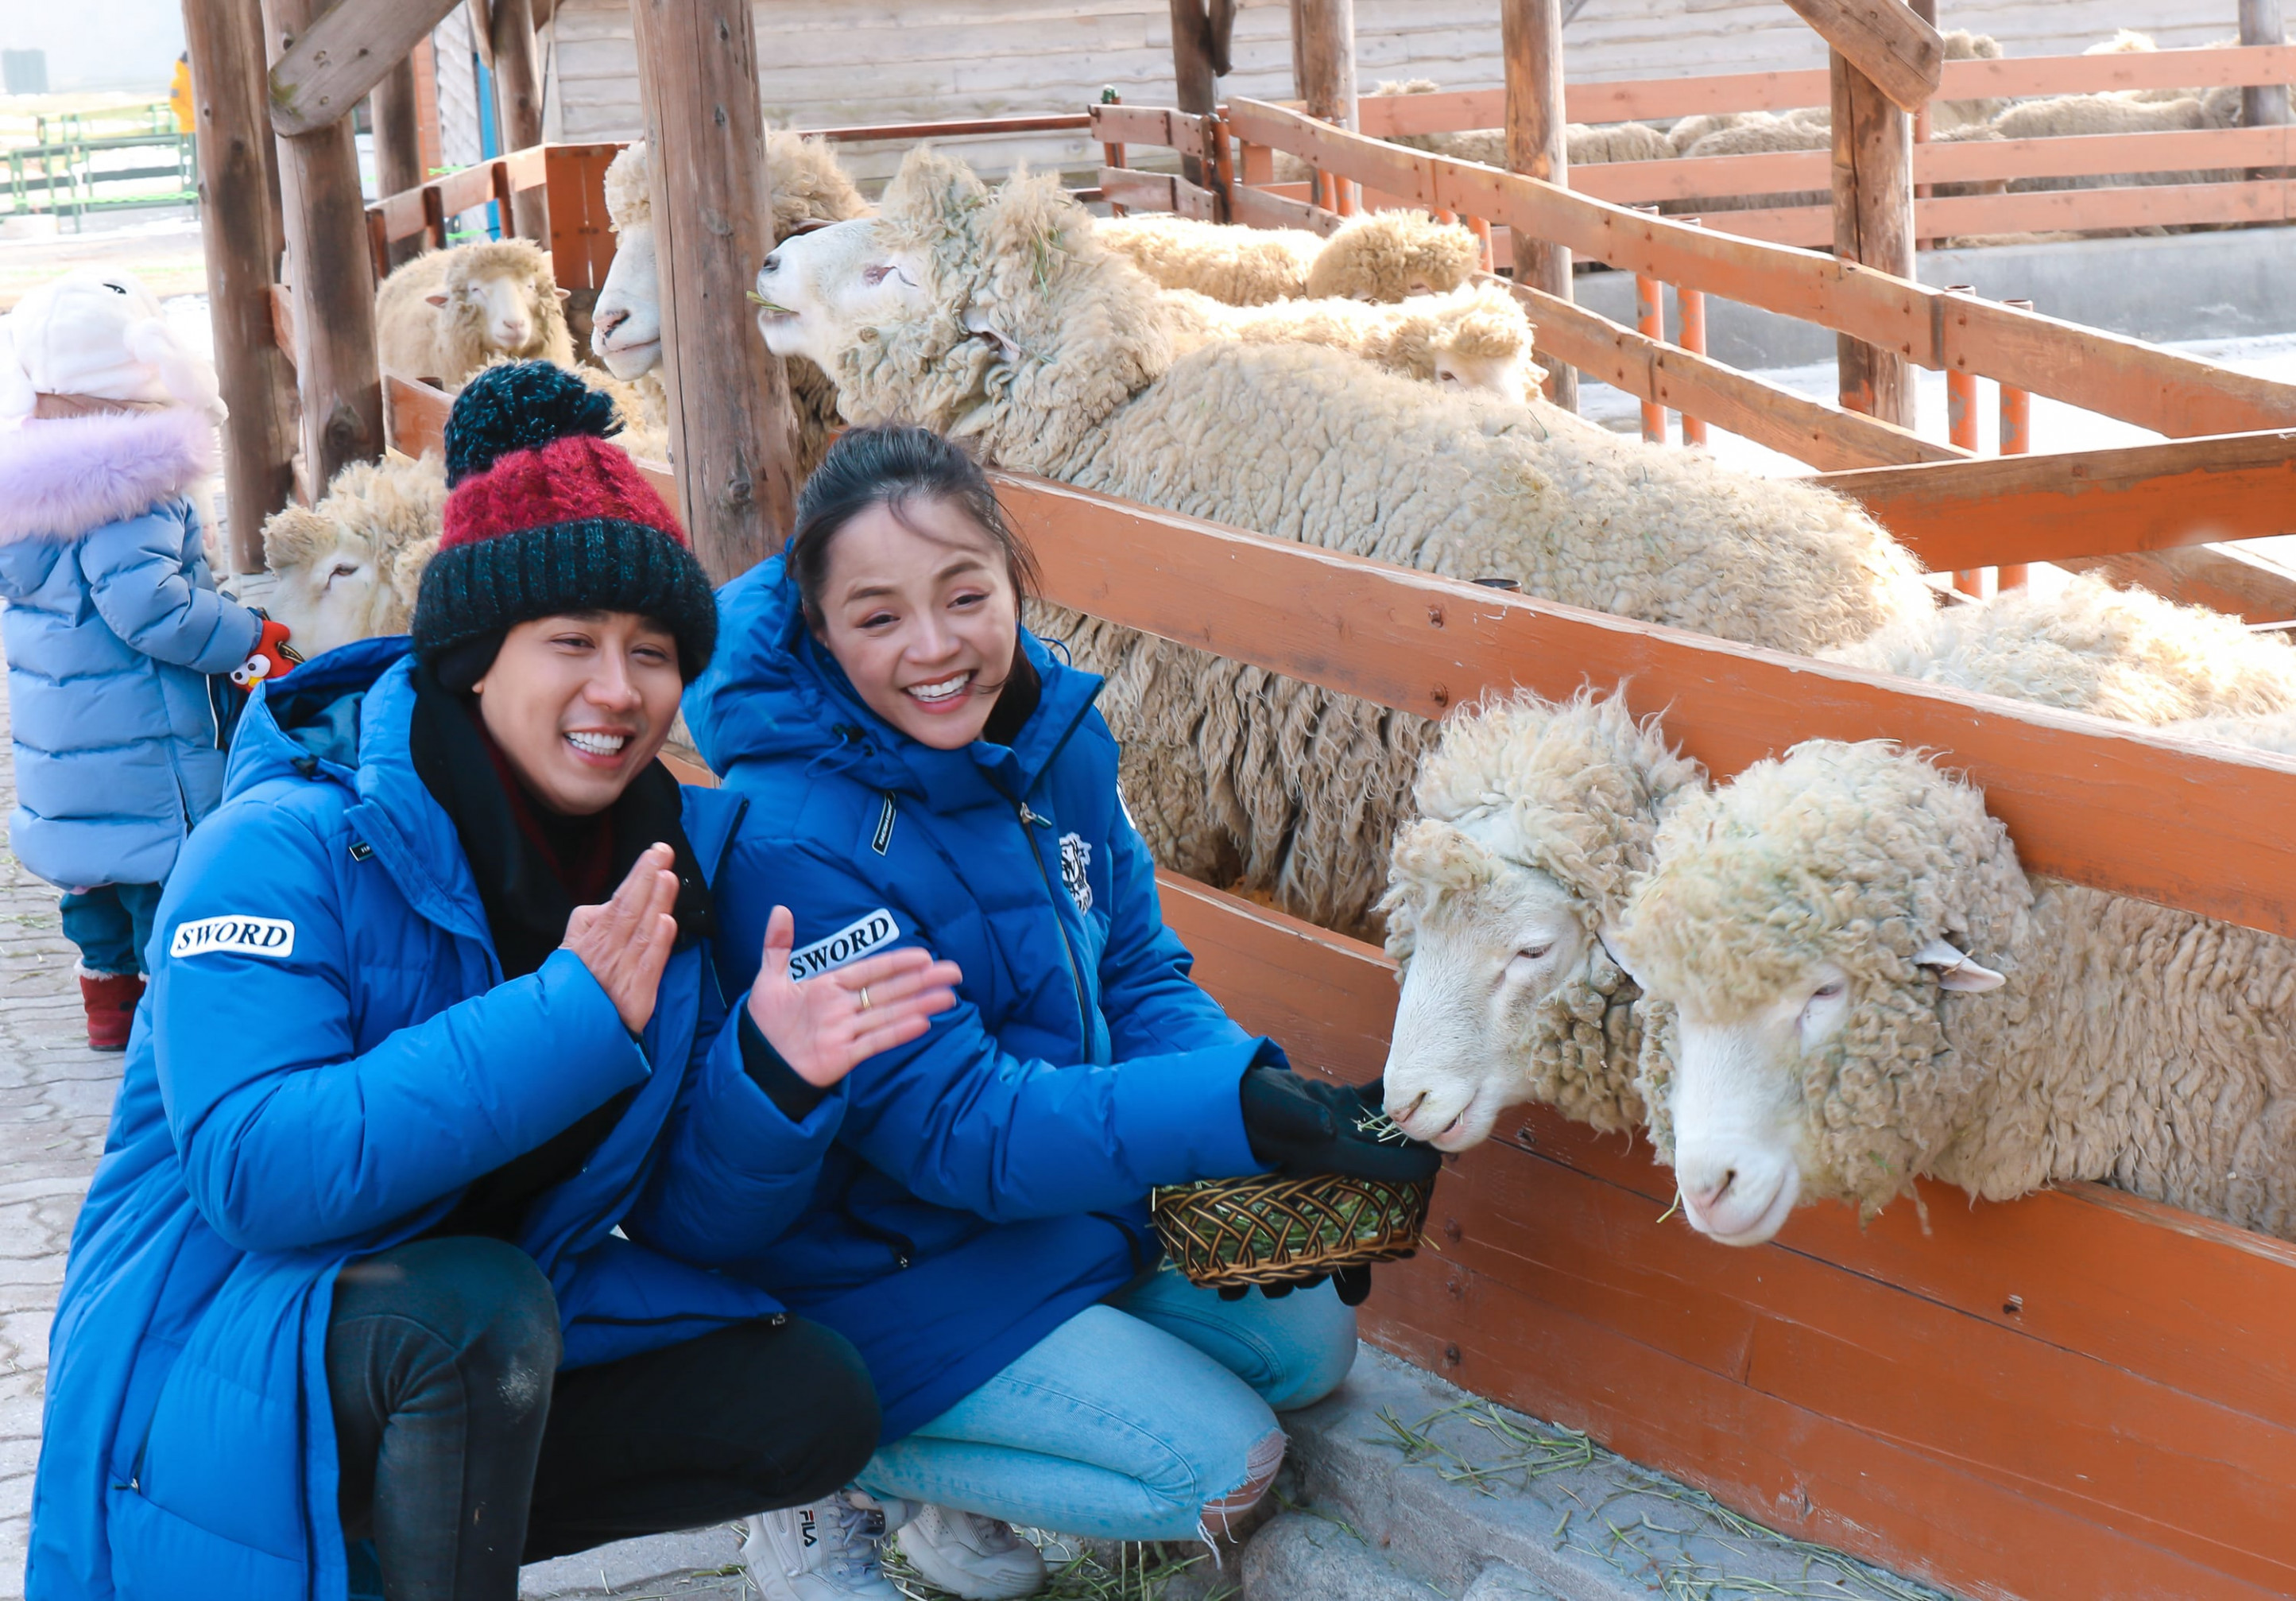 Nguyên Khang và Thu Quỳnh thăm Nông trại cừu Deagwallyeong. Đây là nông trại duy nhất ở Hàn Quốc chỉ nuôi cừu, nằm trên ngọn đồi cao 850 - 900m so với mực nước biển.